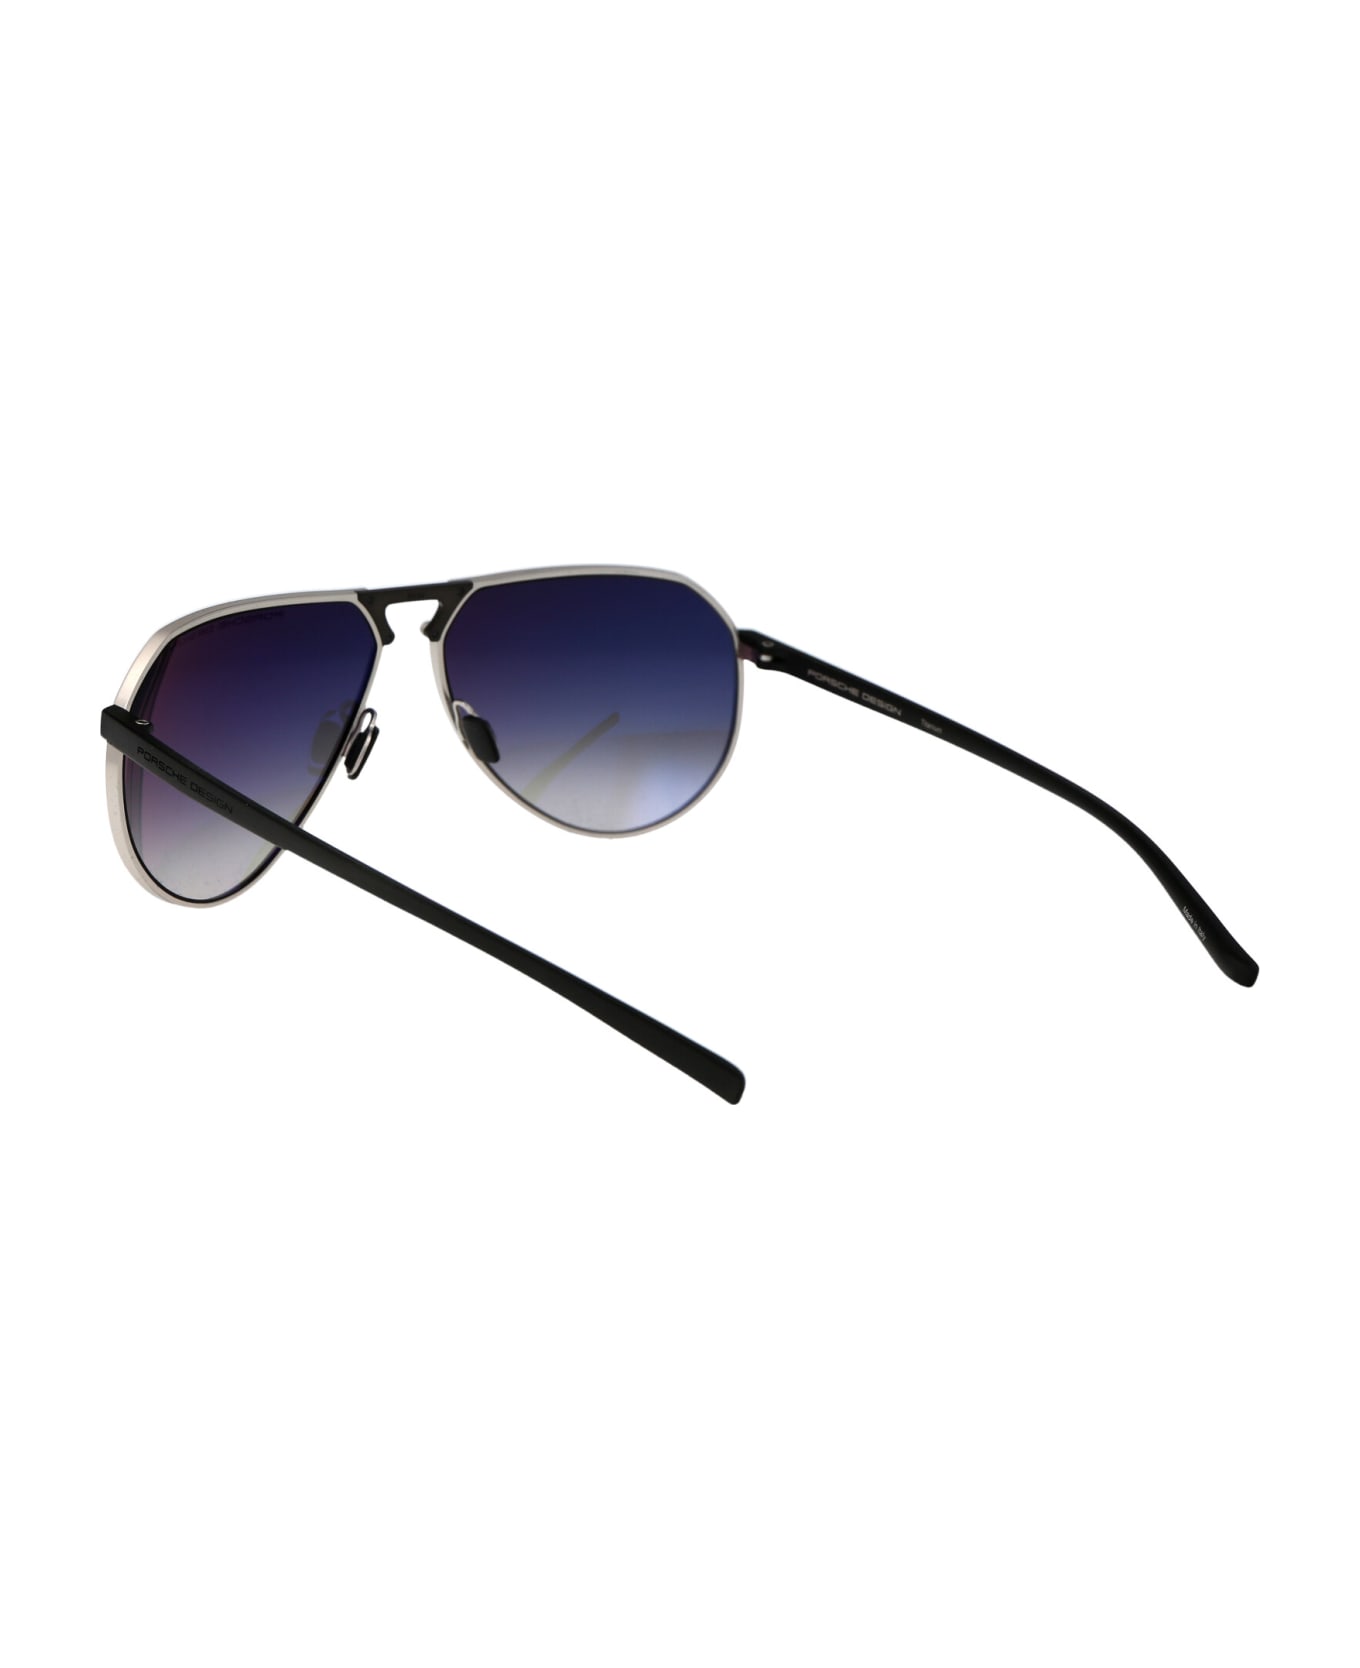 Porsche Design P8938 Sunglasses - B226 TITANIUM BLACK